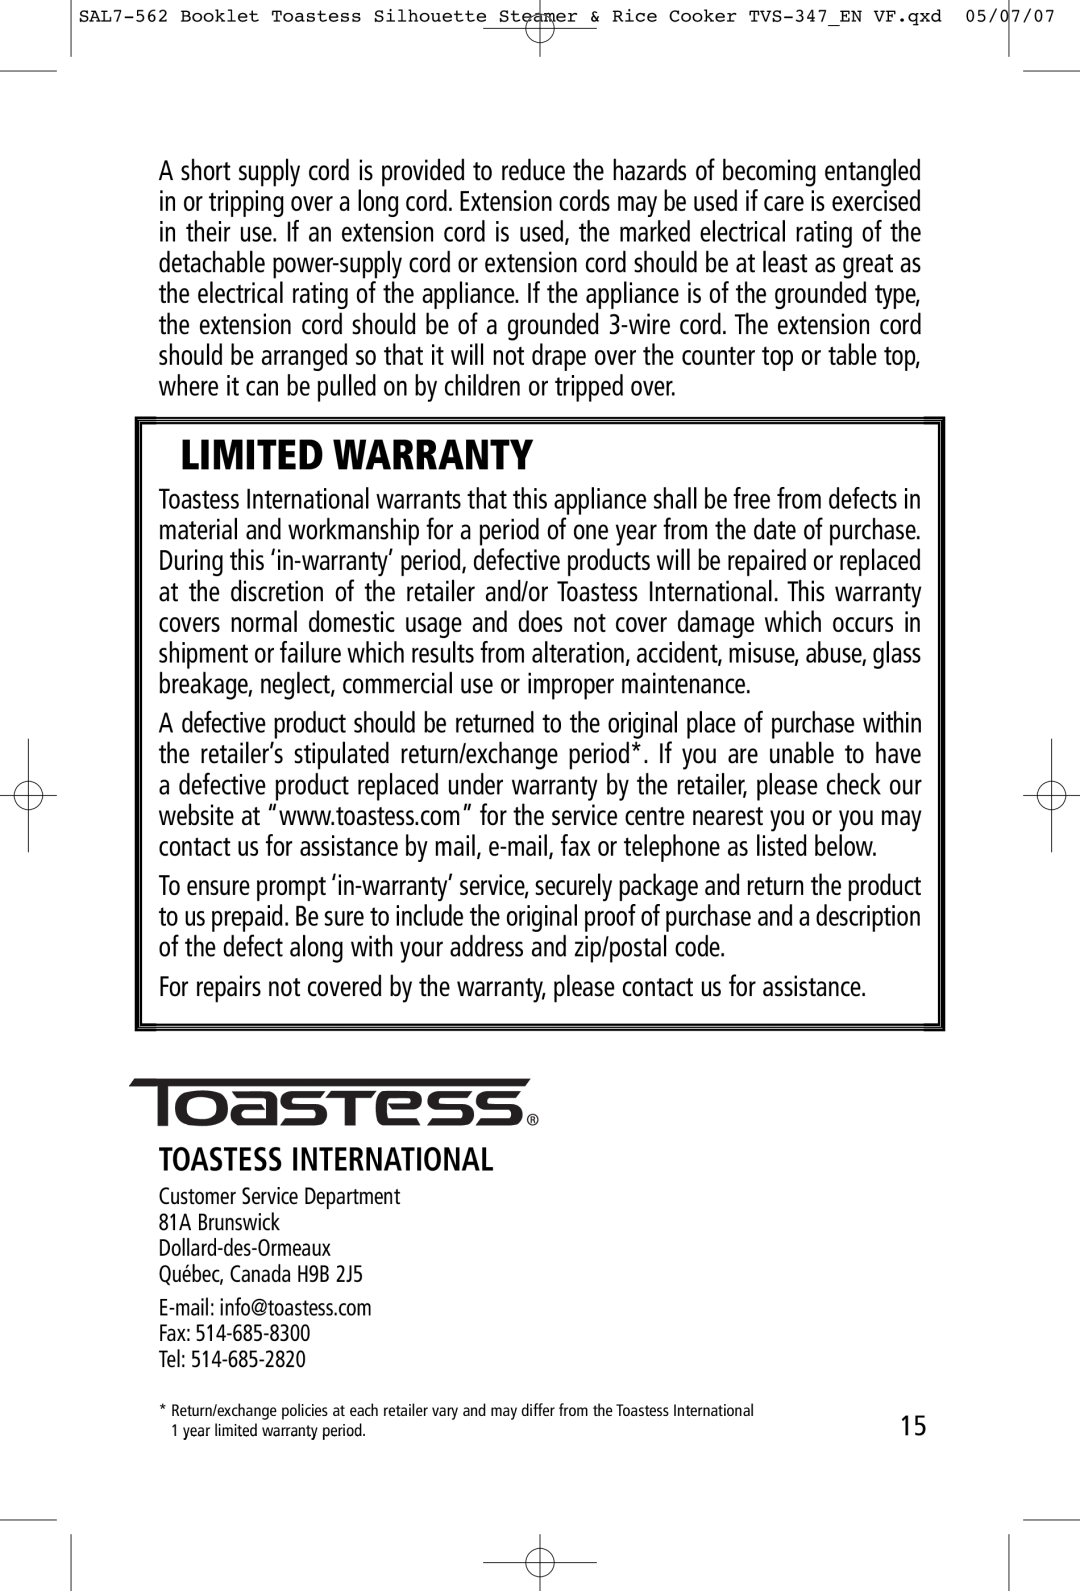 Toastess TVS347 manual Toastess International, Limited Warranty 